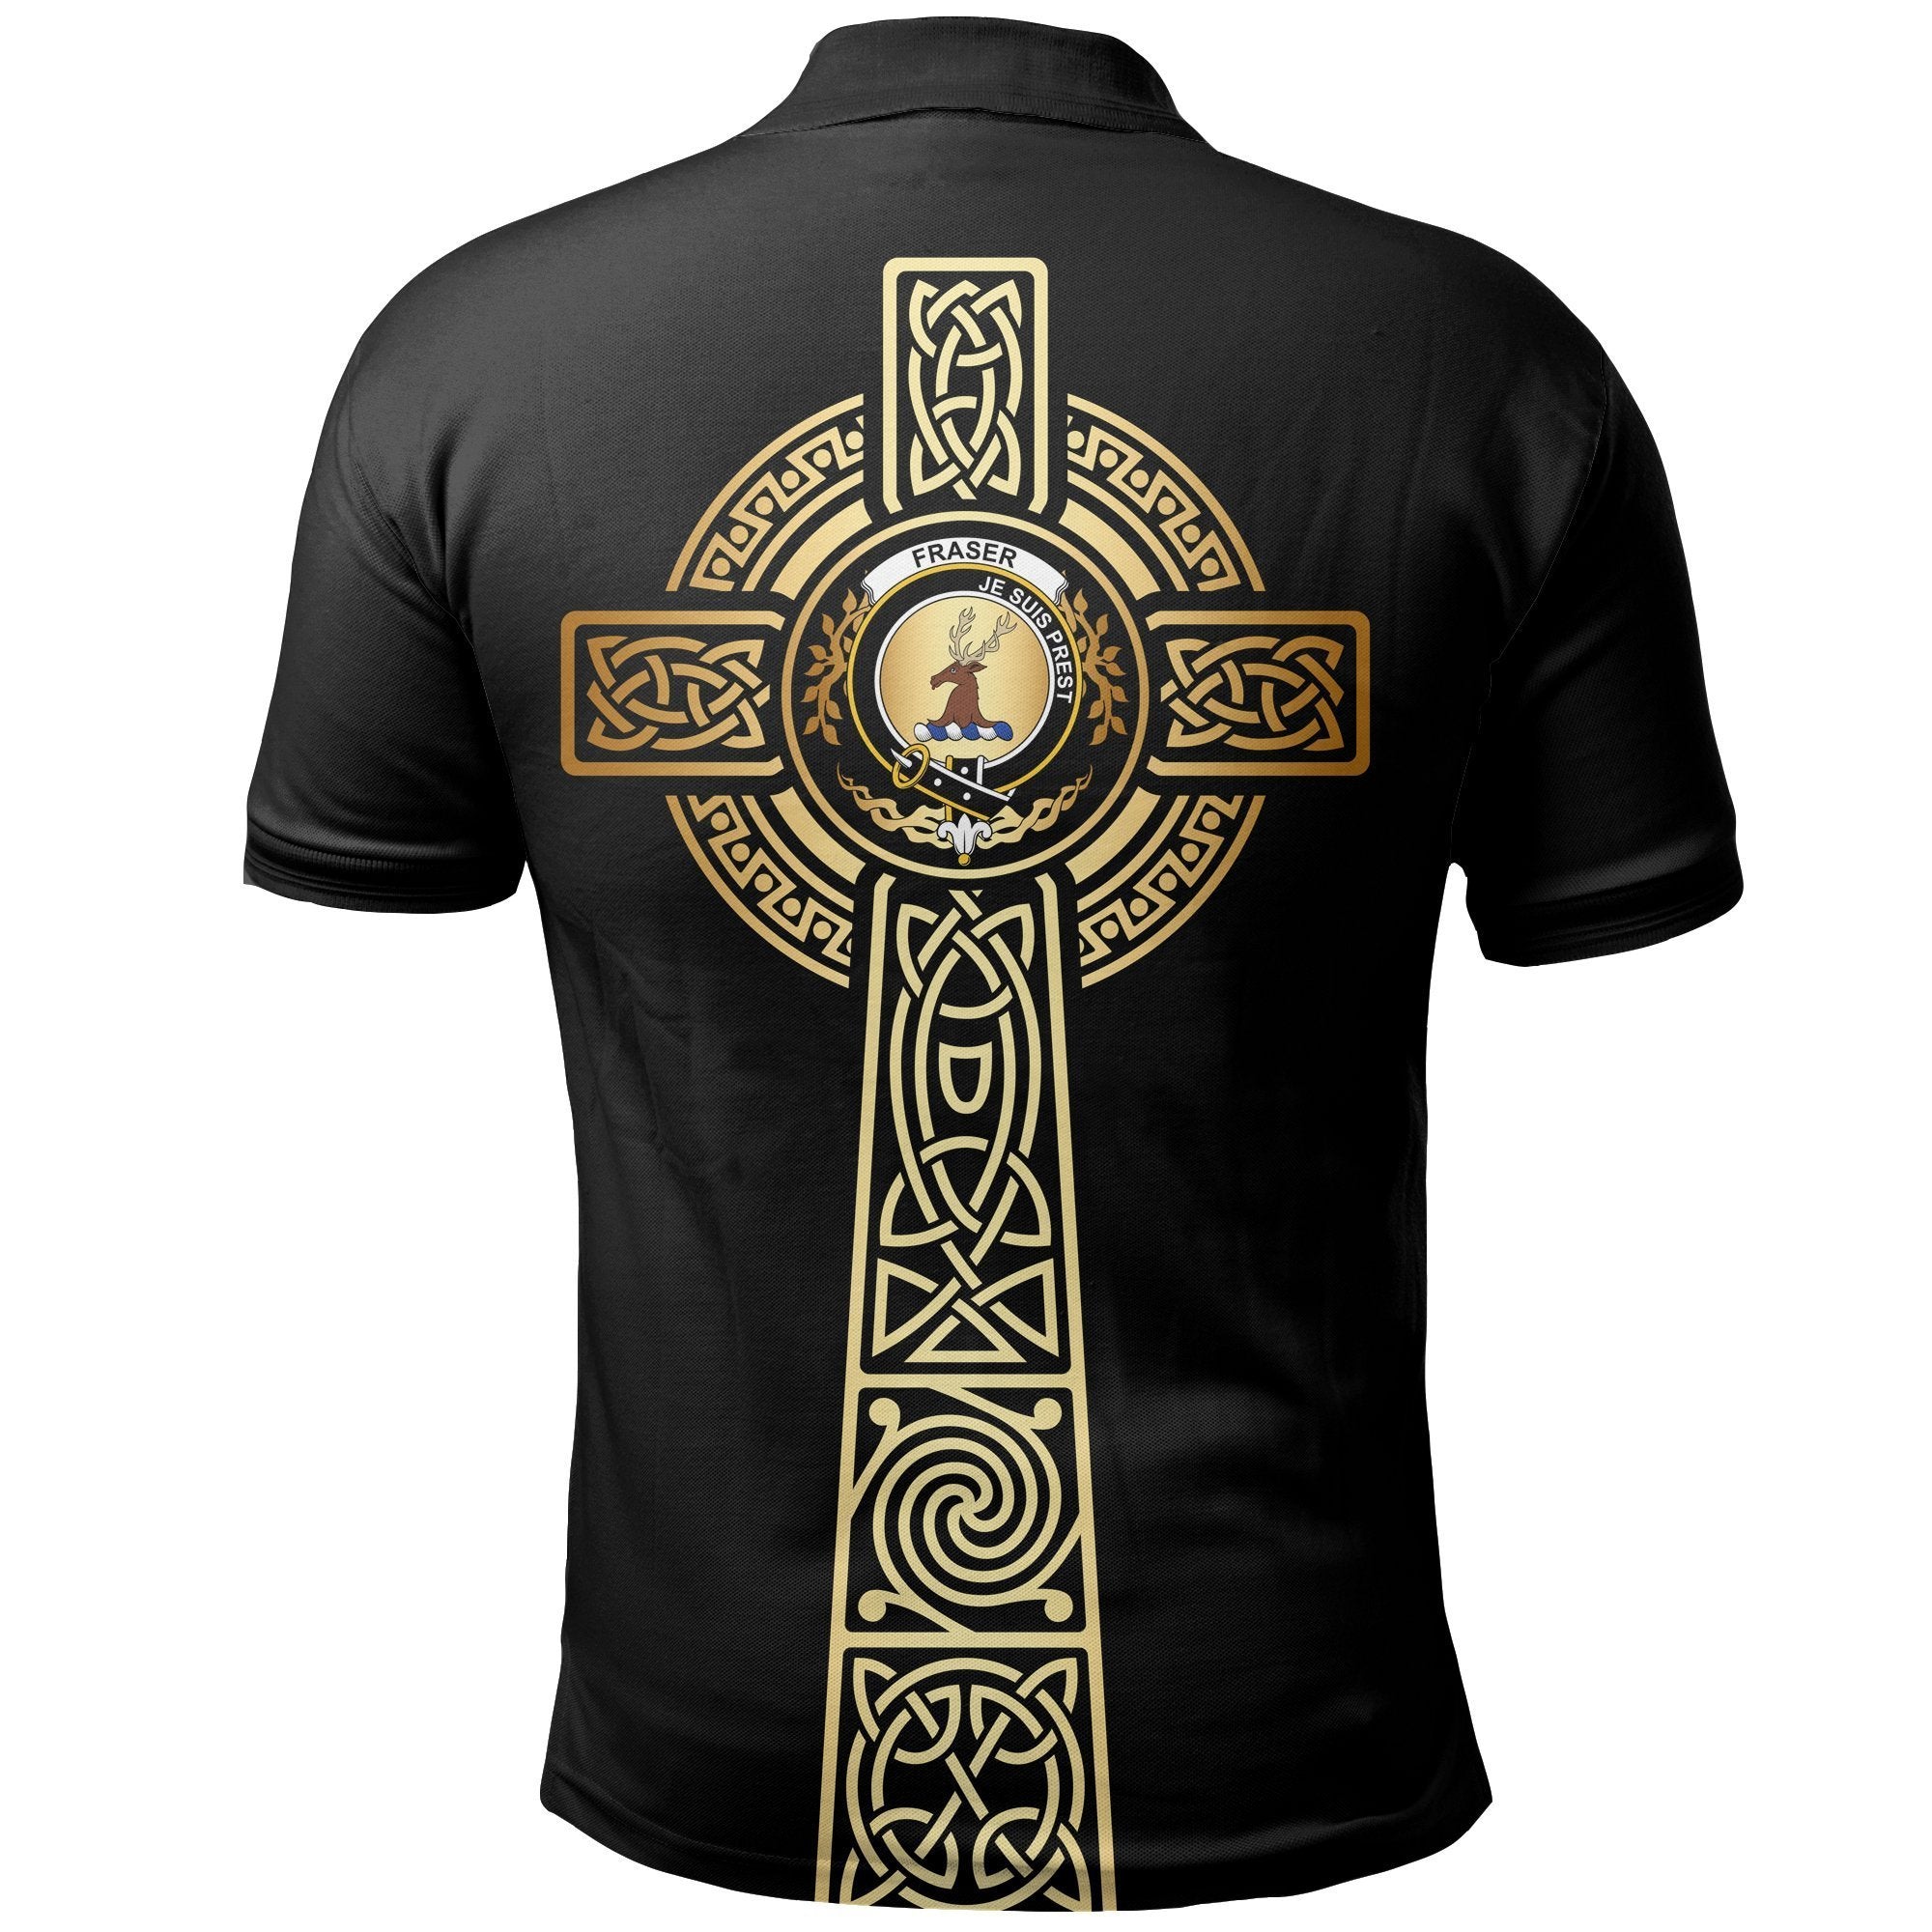 Fraser (of Lovat) Clan Unisex Polo Shirt - Celtic Tree Of Life